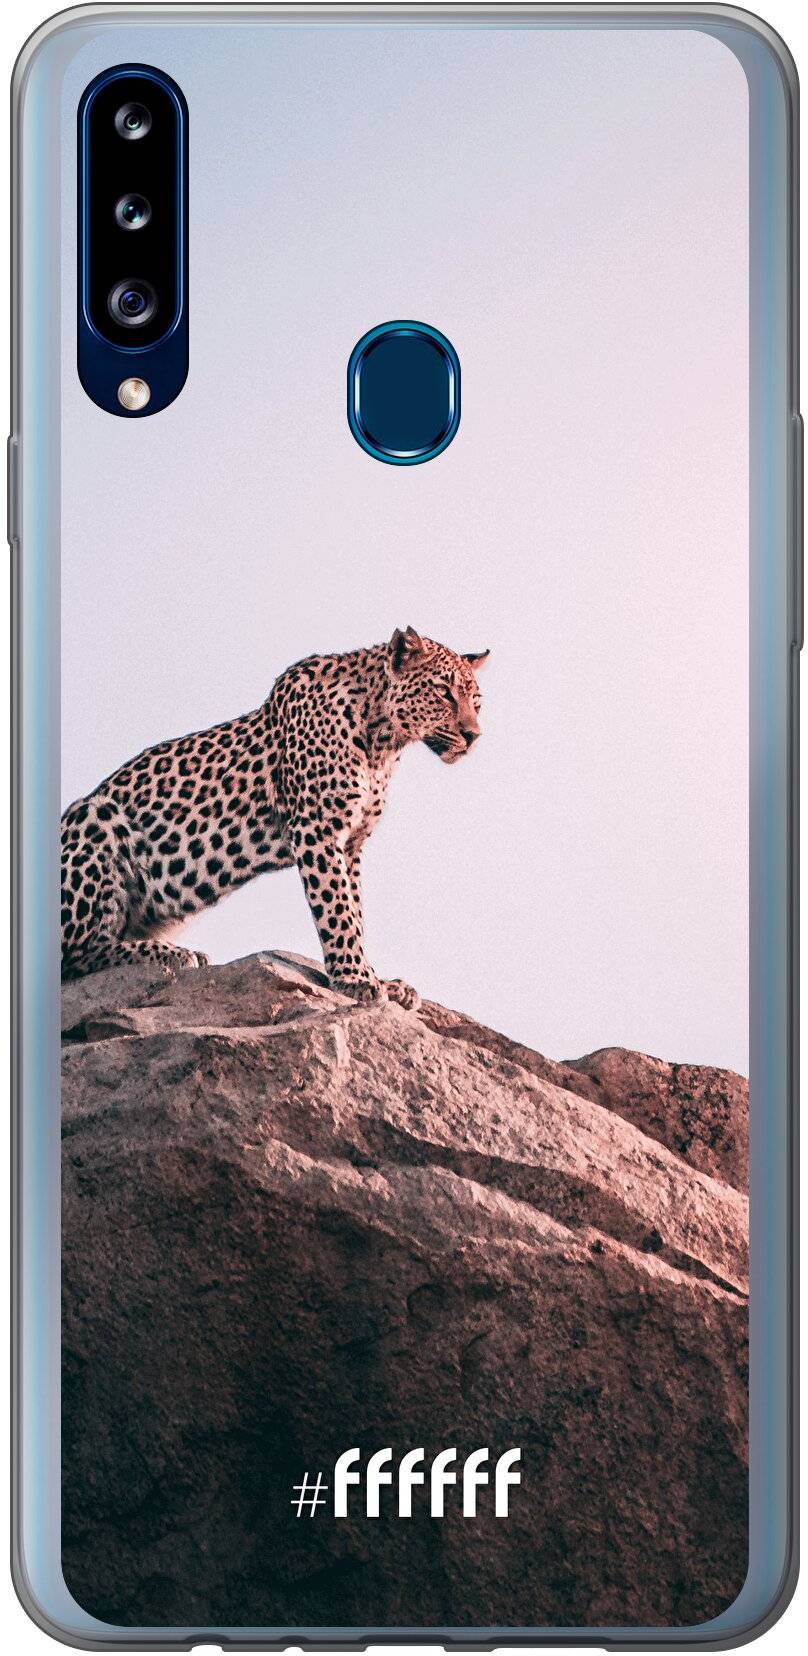 Leopard Galaxy A20s